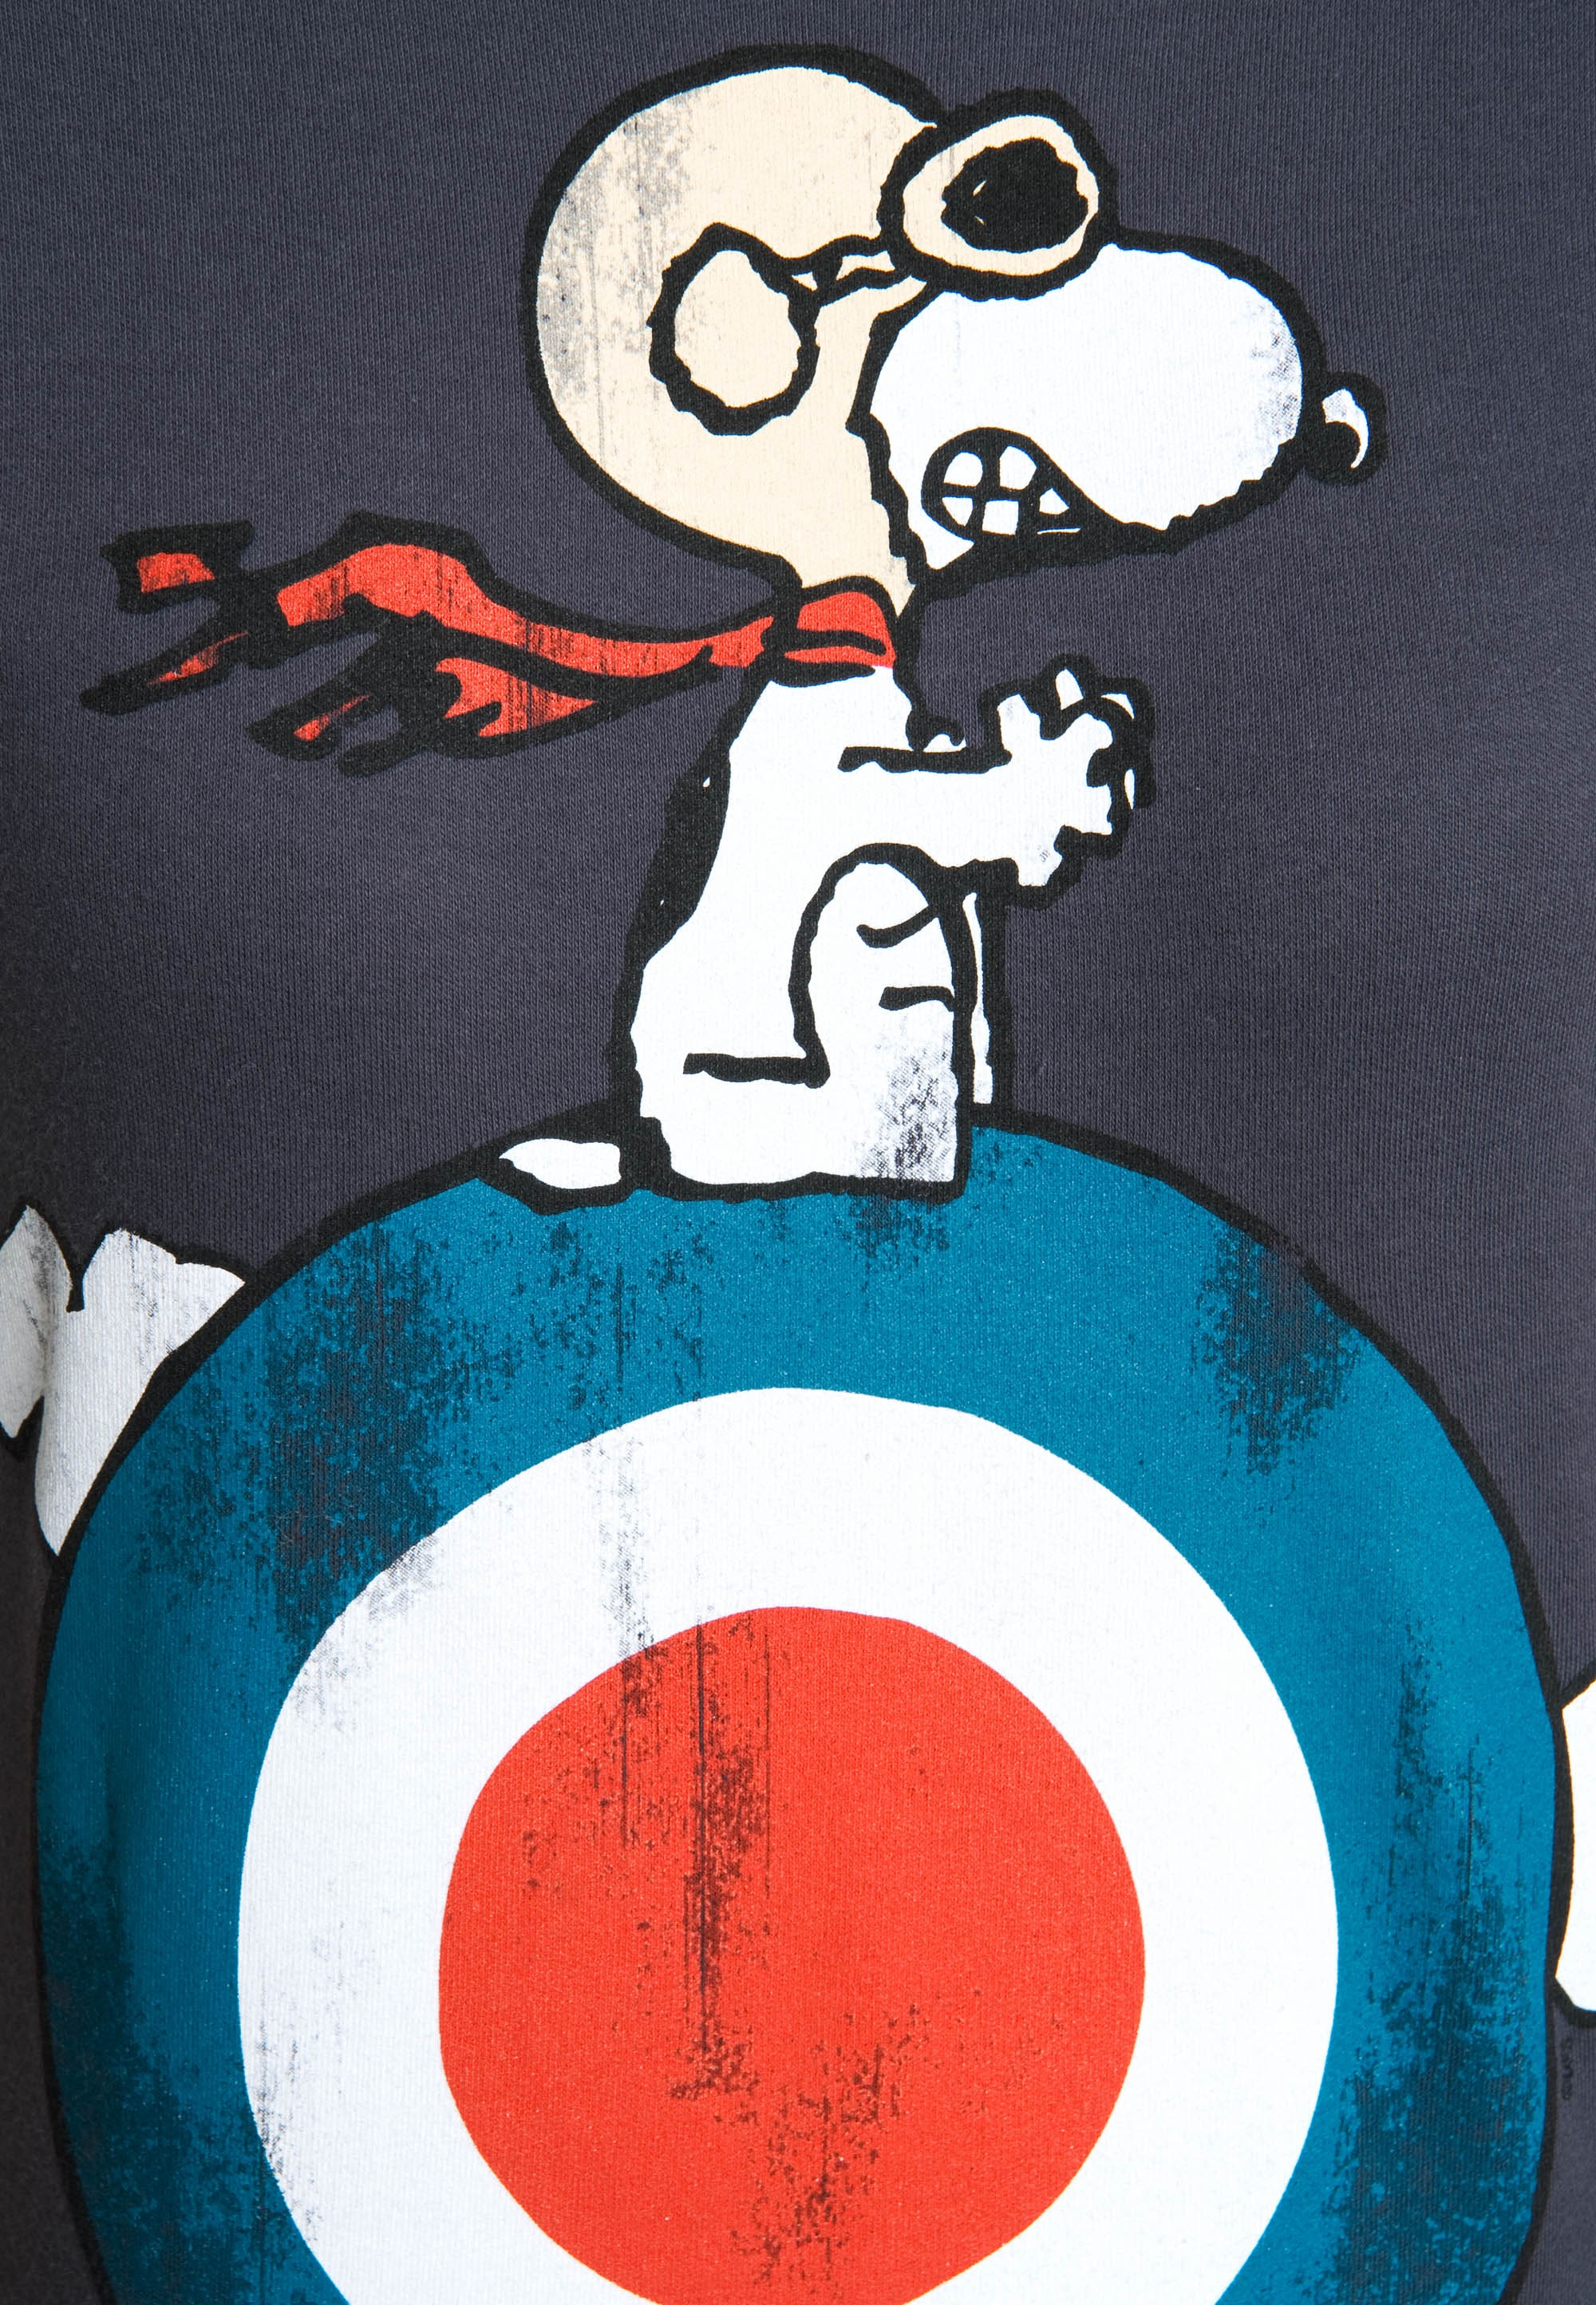 LOGOSHIRT T-Shirt »Snoopy«, mit lizenziertem Originaldesign kaufen | BAUR